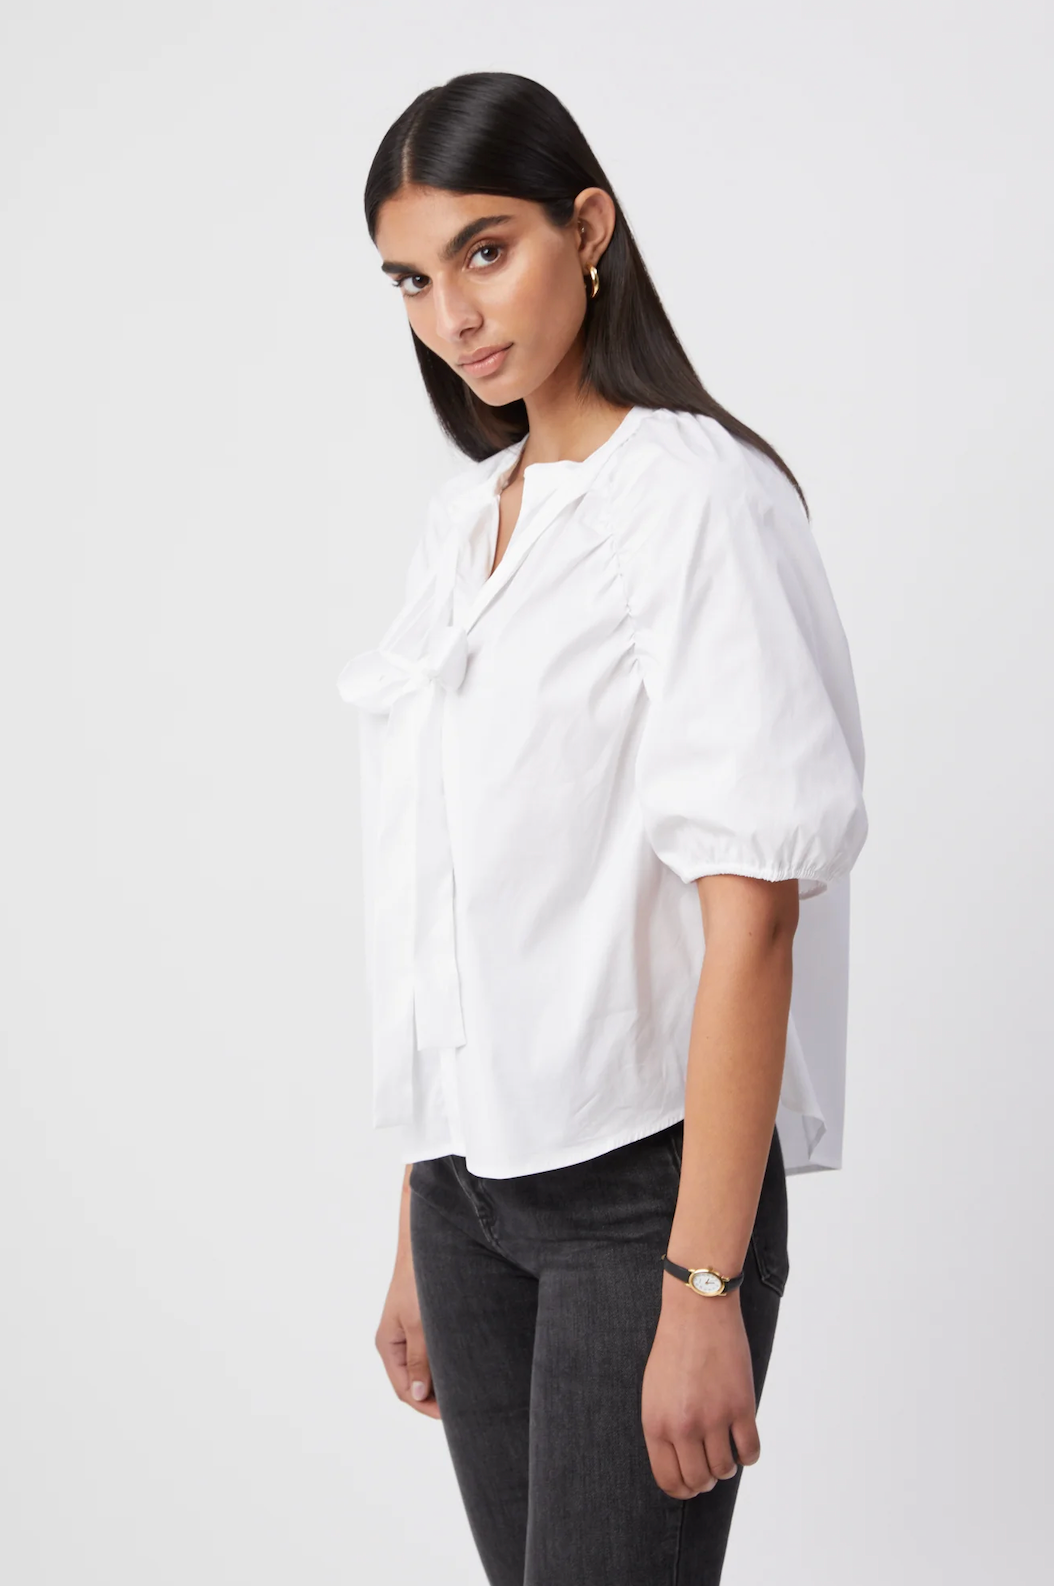 The Shirt: Antoinette Shirt White